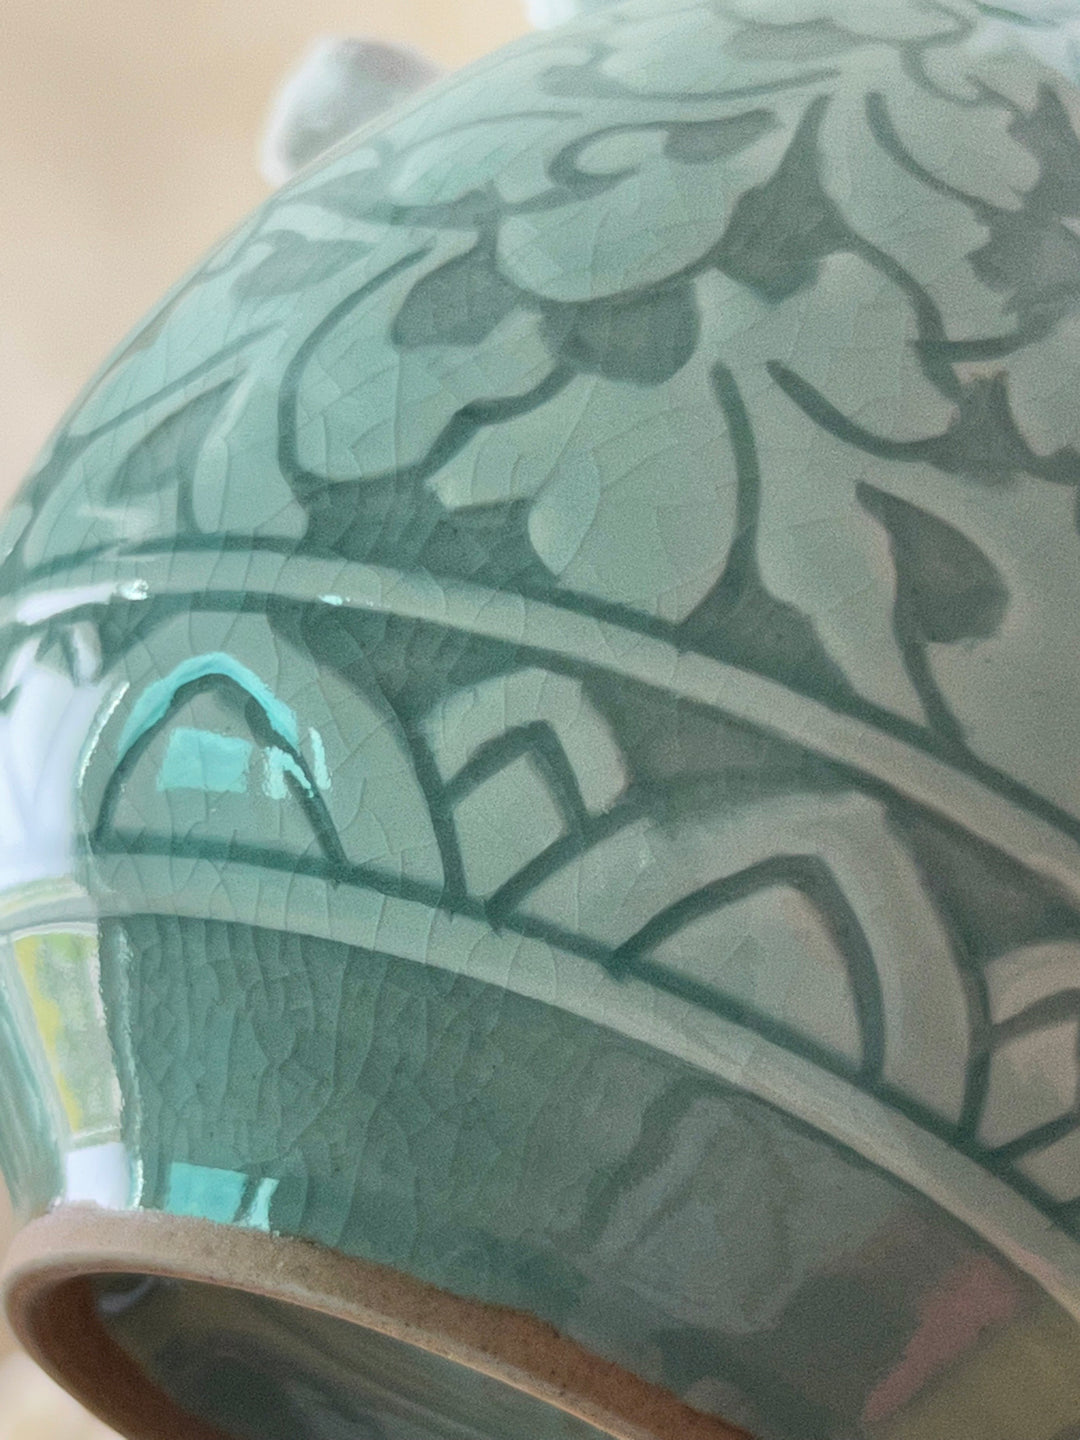 美しい韓国の伝統的な唐草模様の青磁花瓶セット